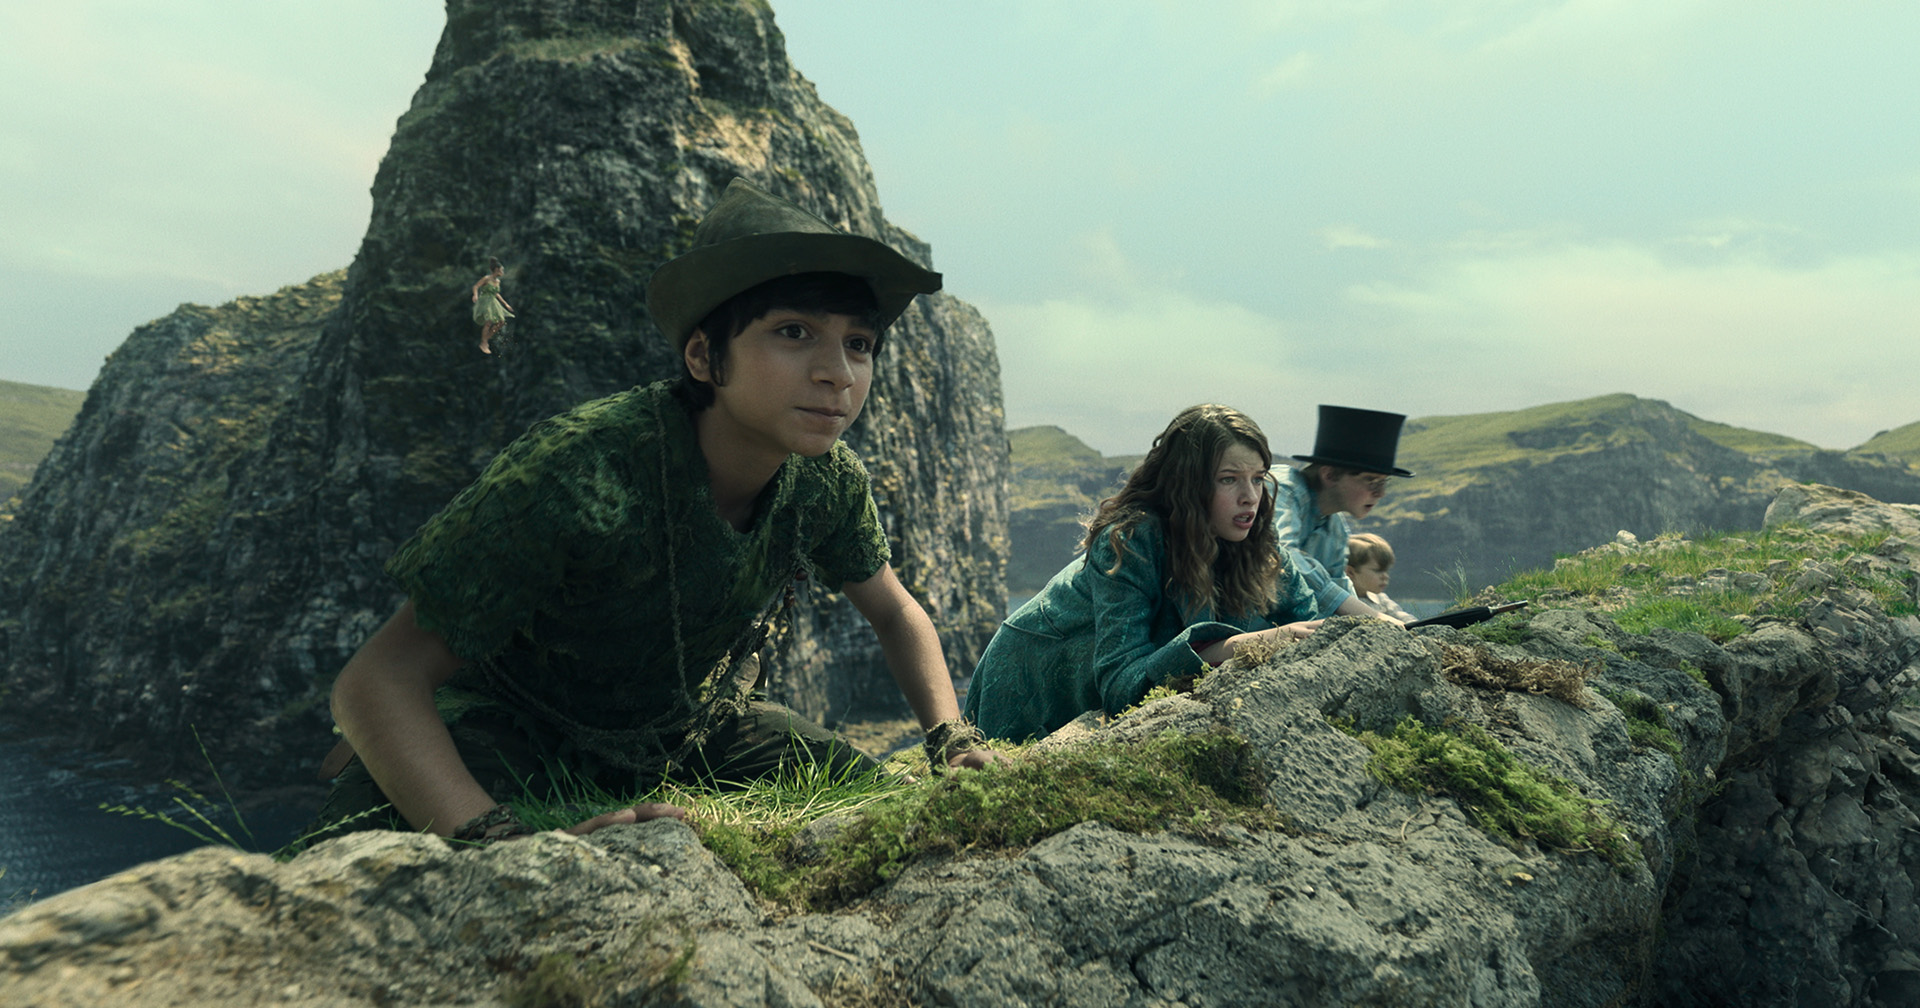 [รีวิว] Peter Pan & Wendy: ไลฟ์แอ็กชันสำหรับน้องหนู ดูเพลินดีแต่ไม่มีอะไรใหม่